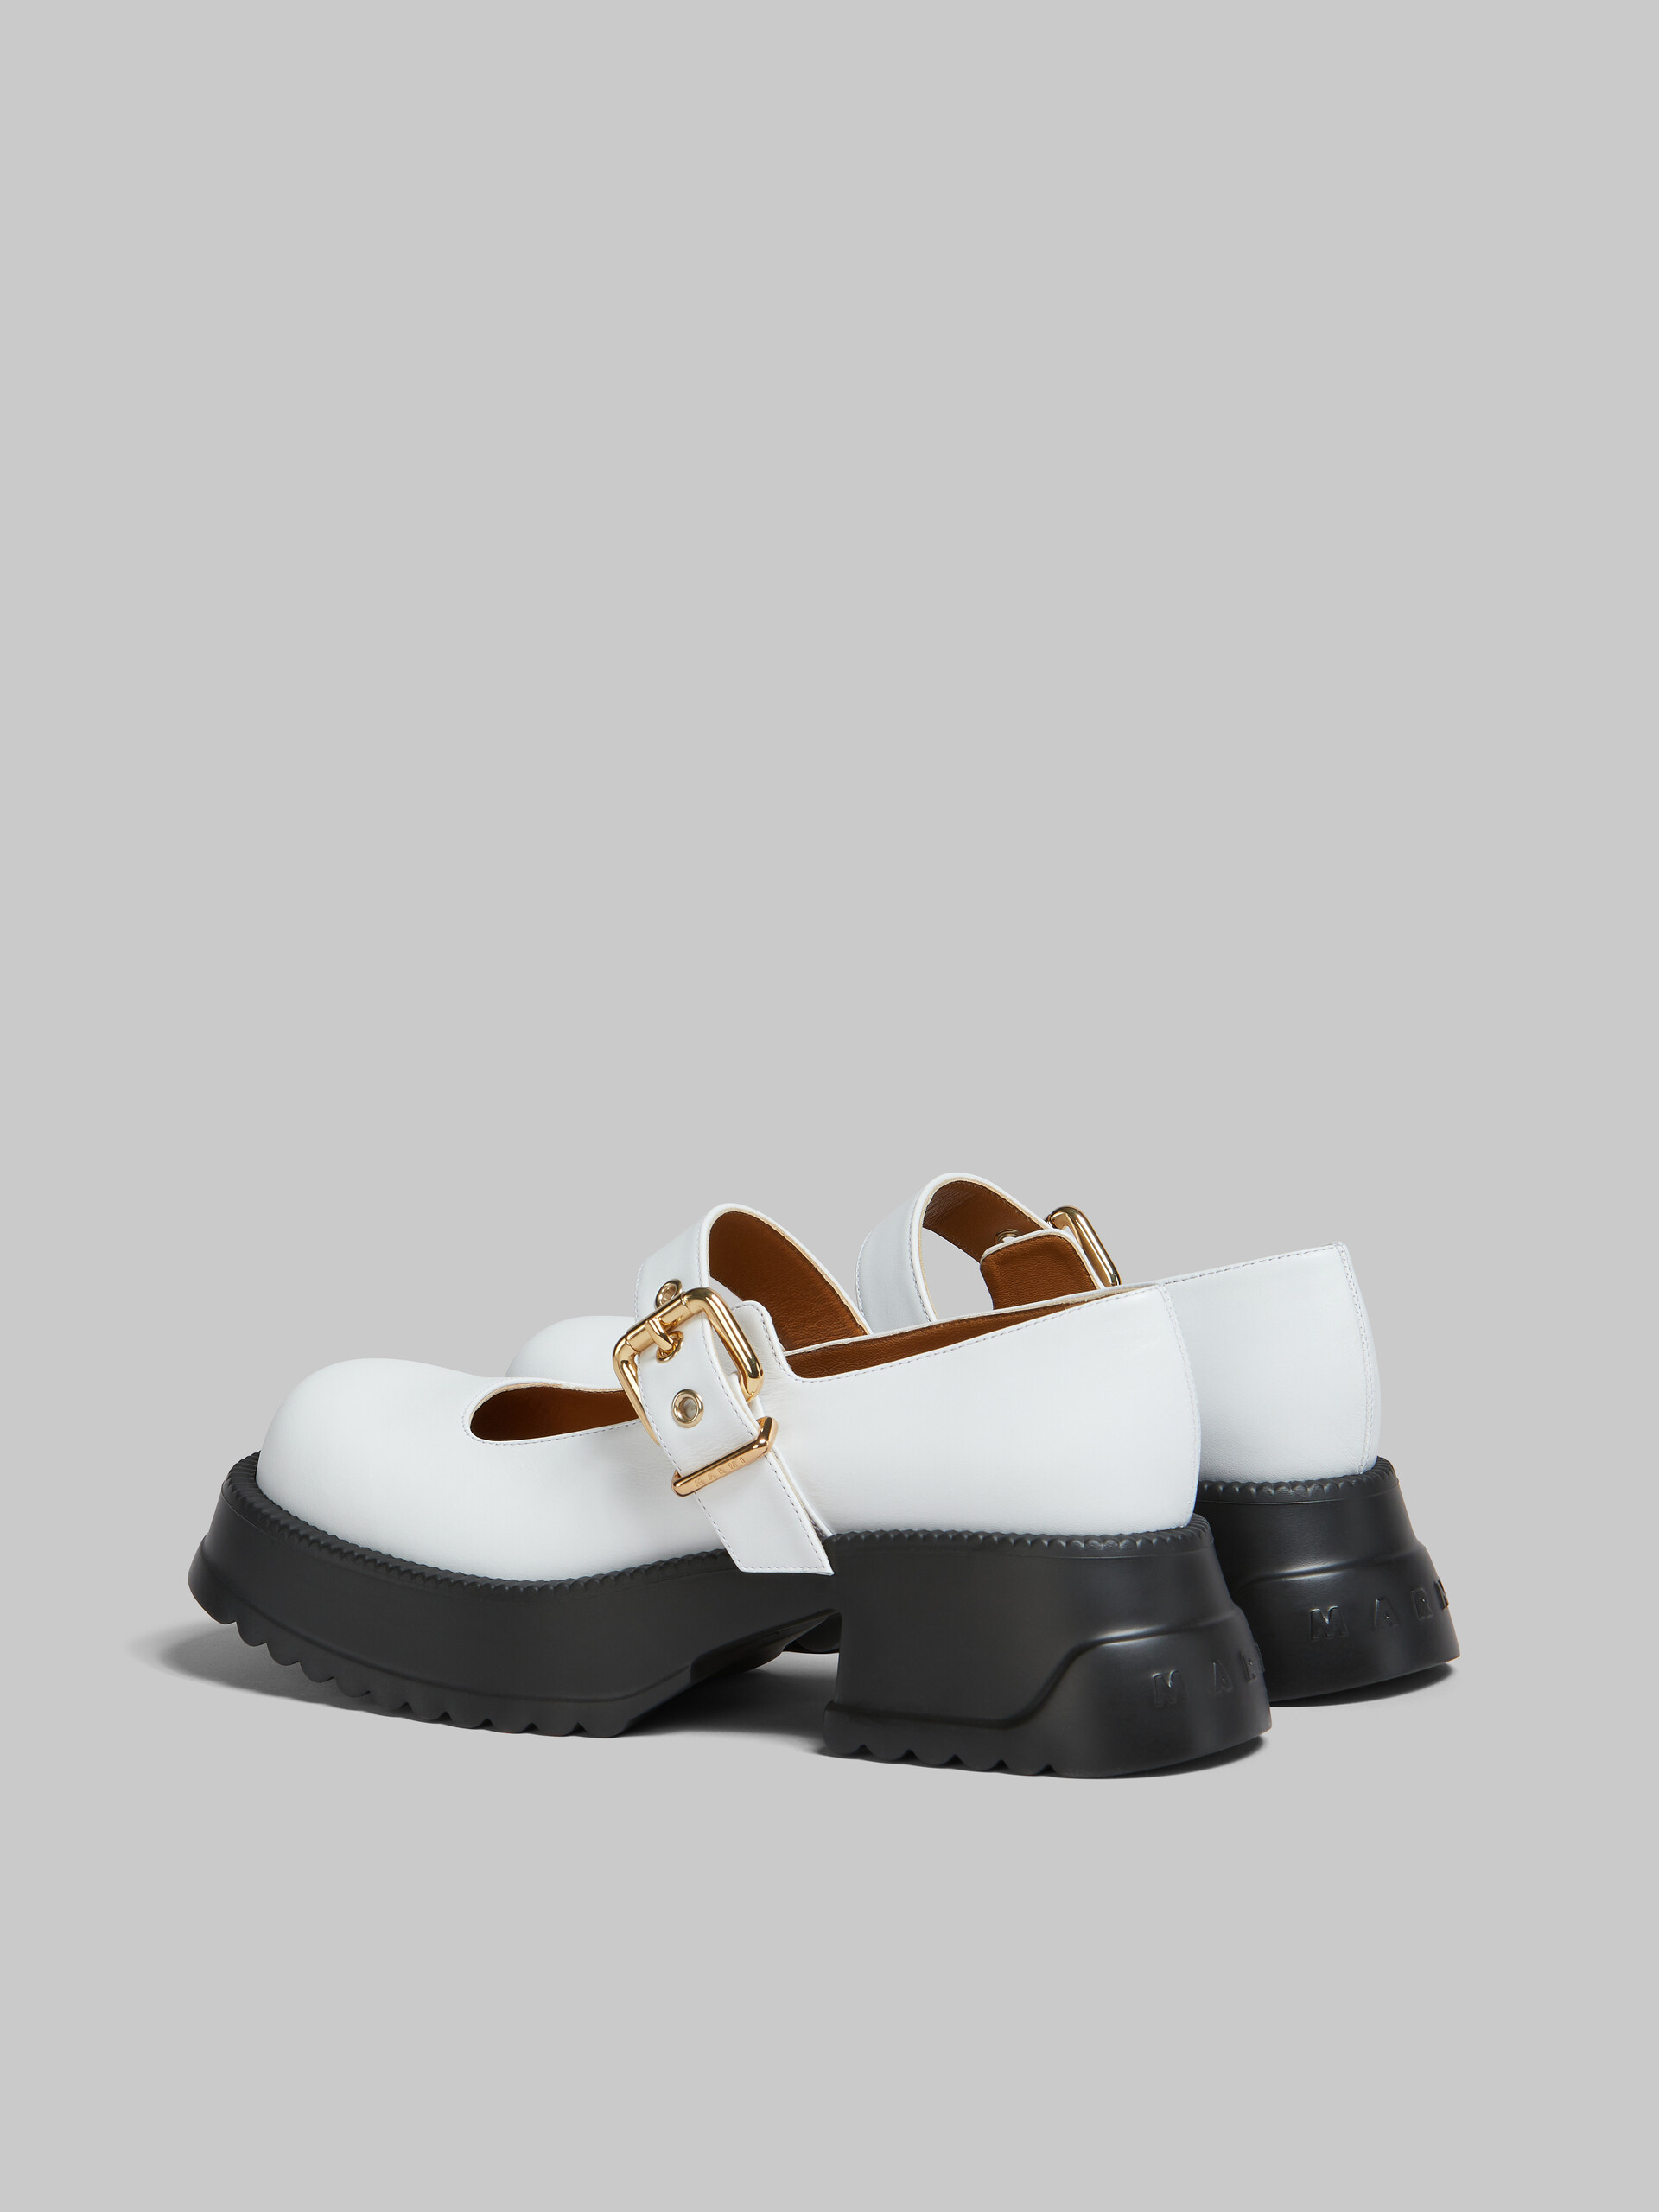 Zapatos estilo Mary Jane de piel negra con suela de plataforma - Sneakers - Image 3